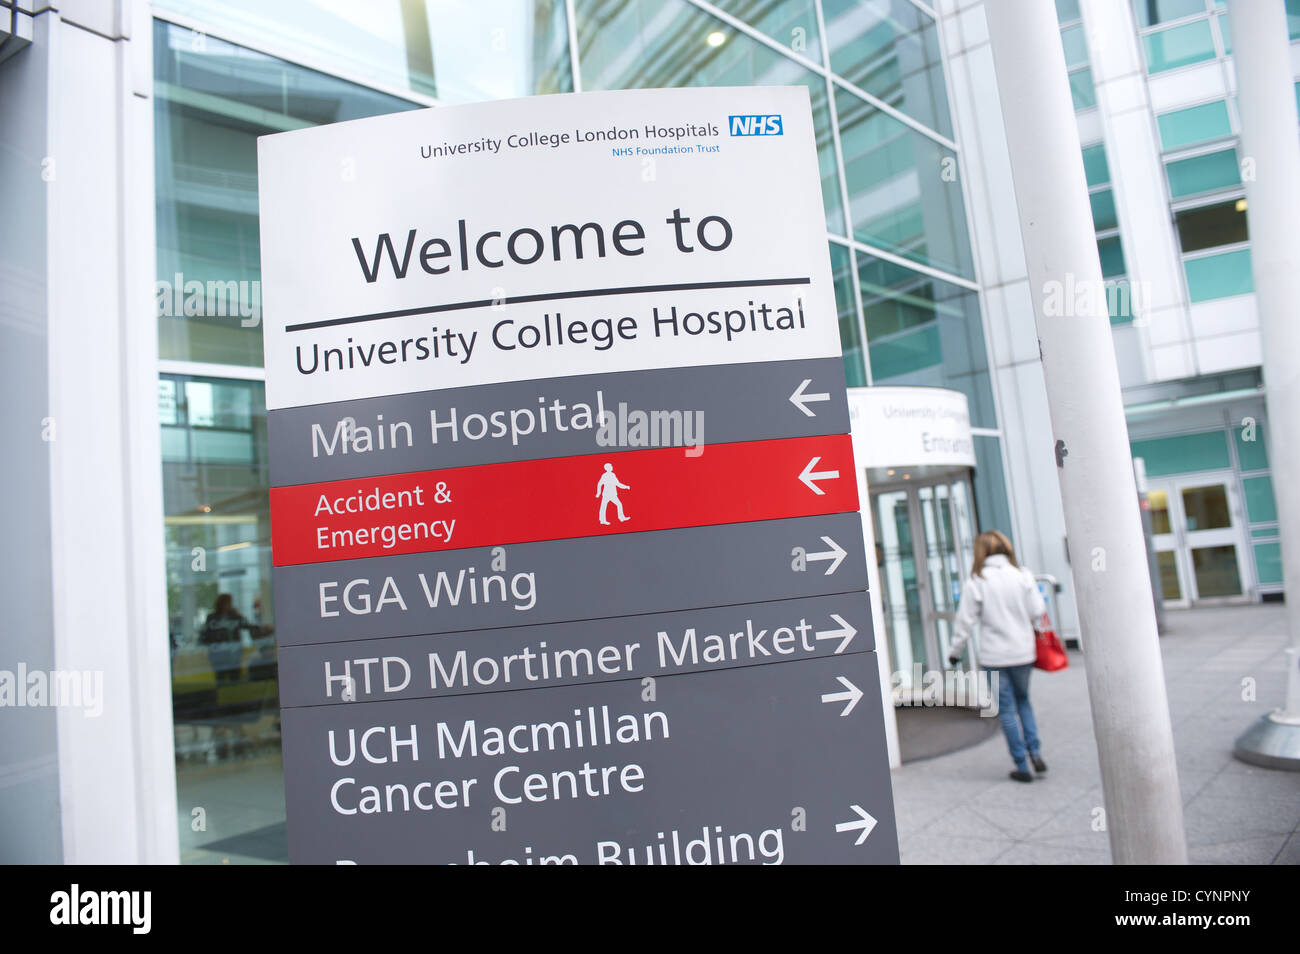 Entrée principale de l'University College Hospital, London, England, UK Banque D'Images